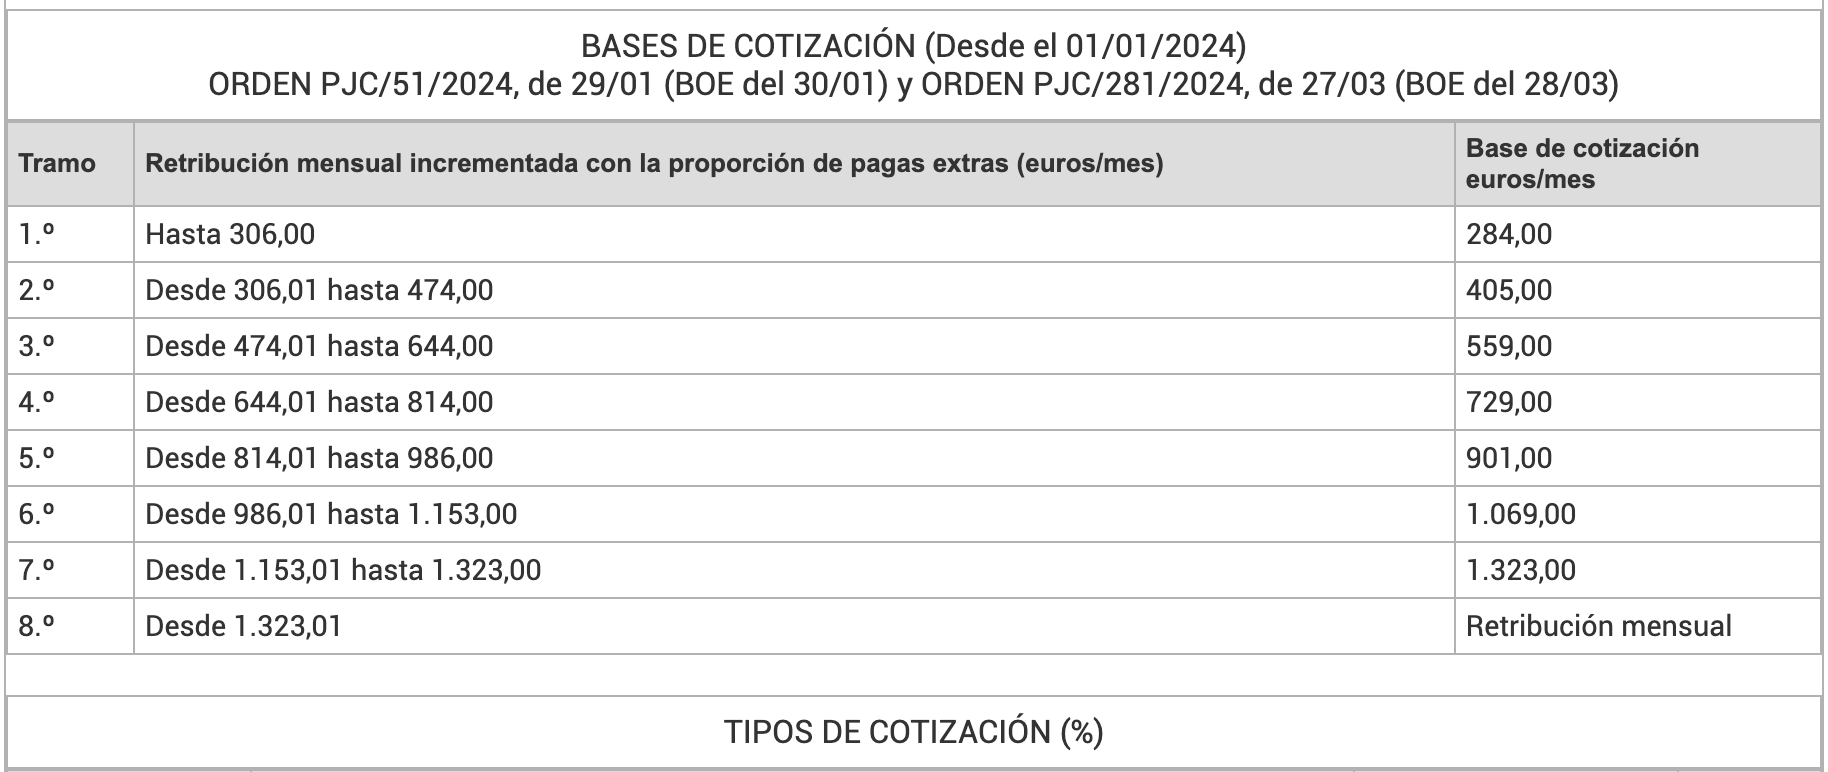 BASES DE COTIZACIÓN EMPLEADOS DEL HOGAR desde el 01-01-2024